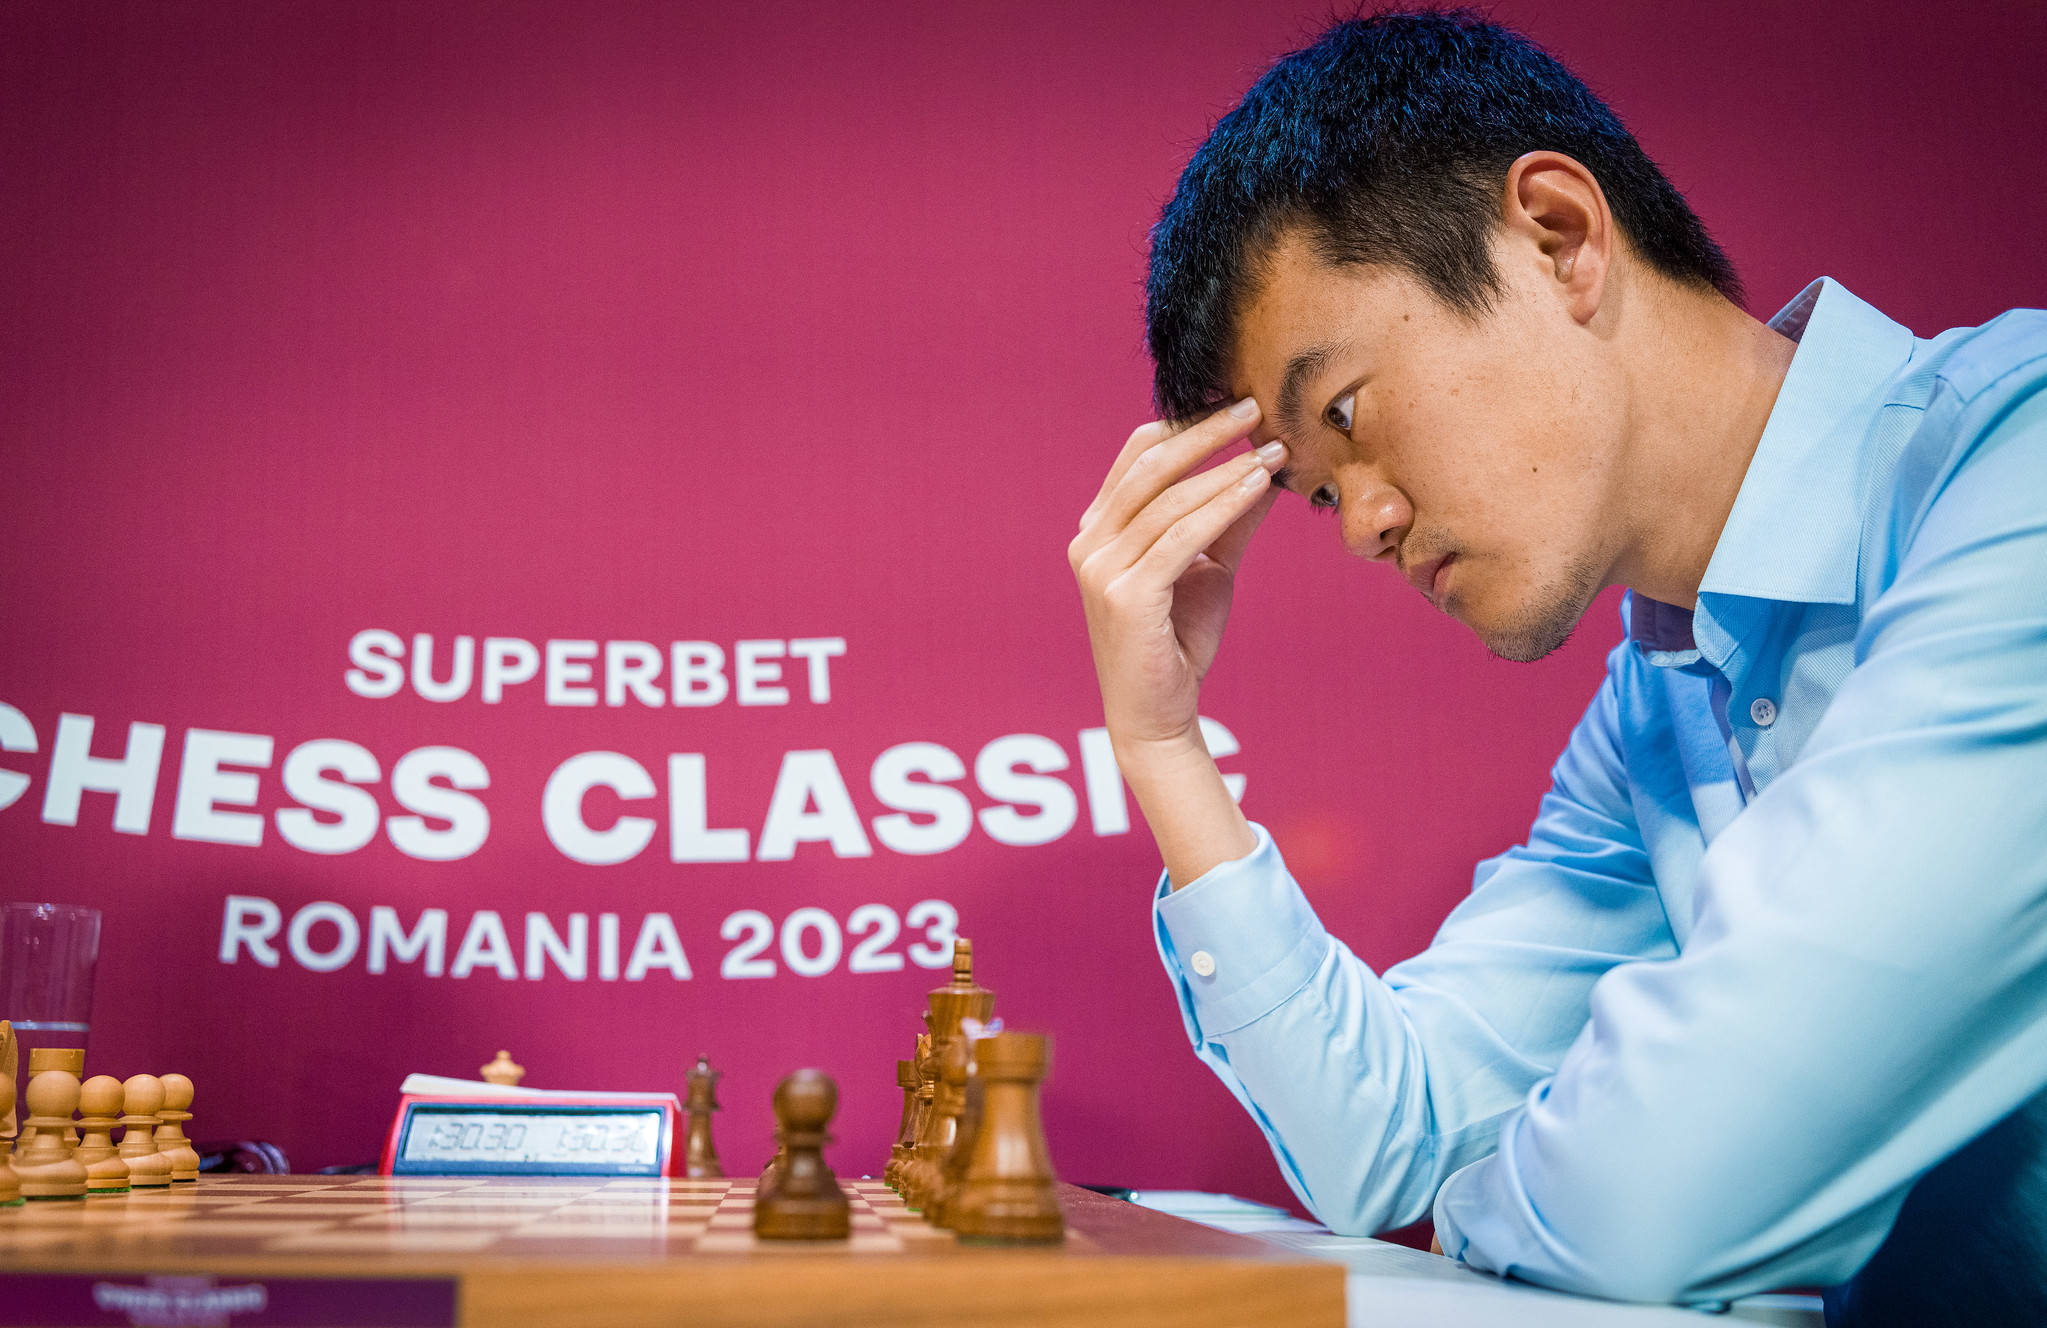 Superbet Classic 2023 R5: Firouzja beats Ding Liren, now World no.2 again -  ChessBase India